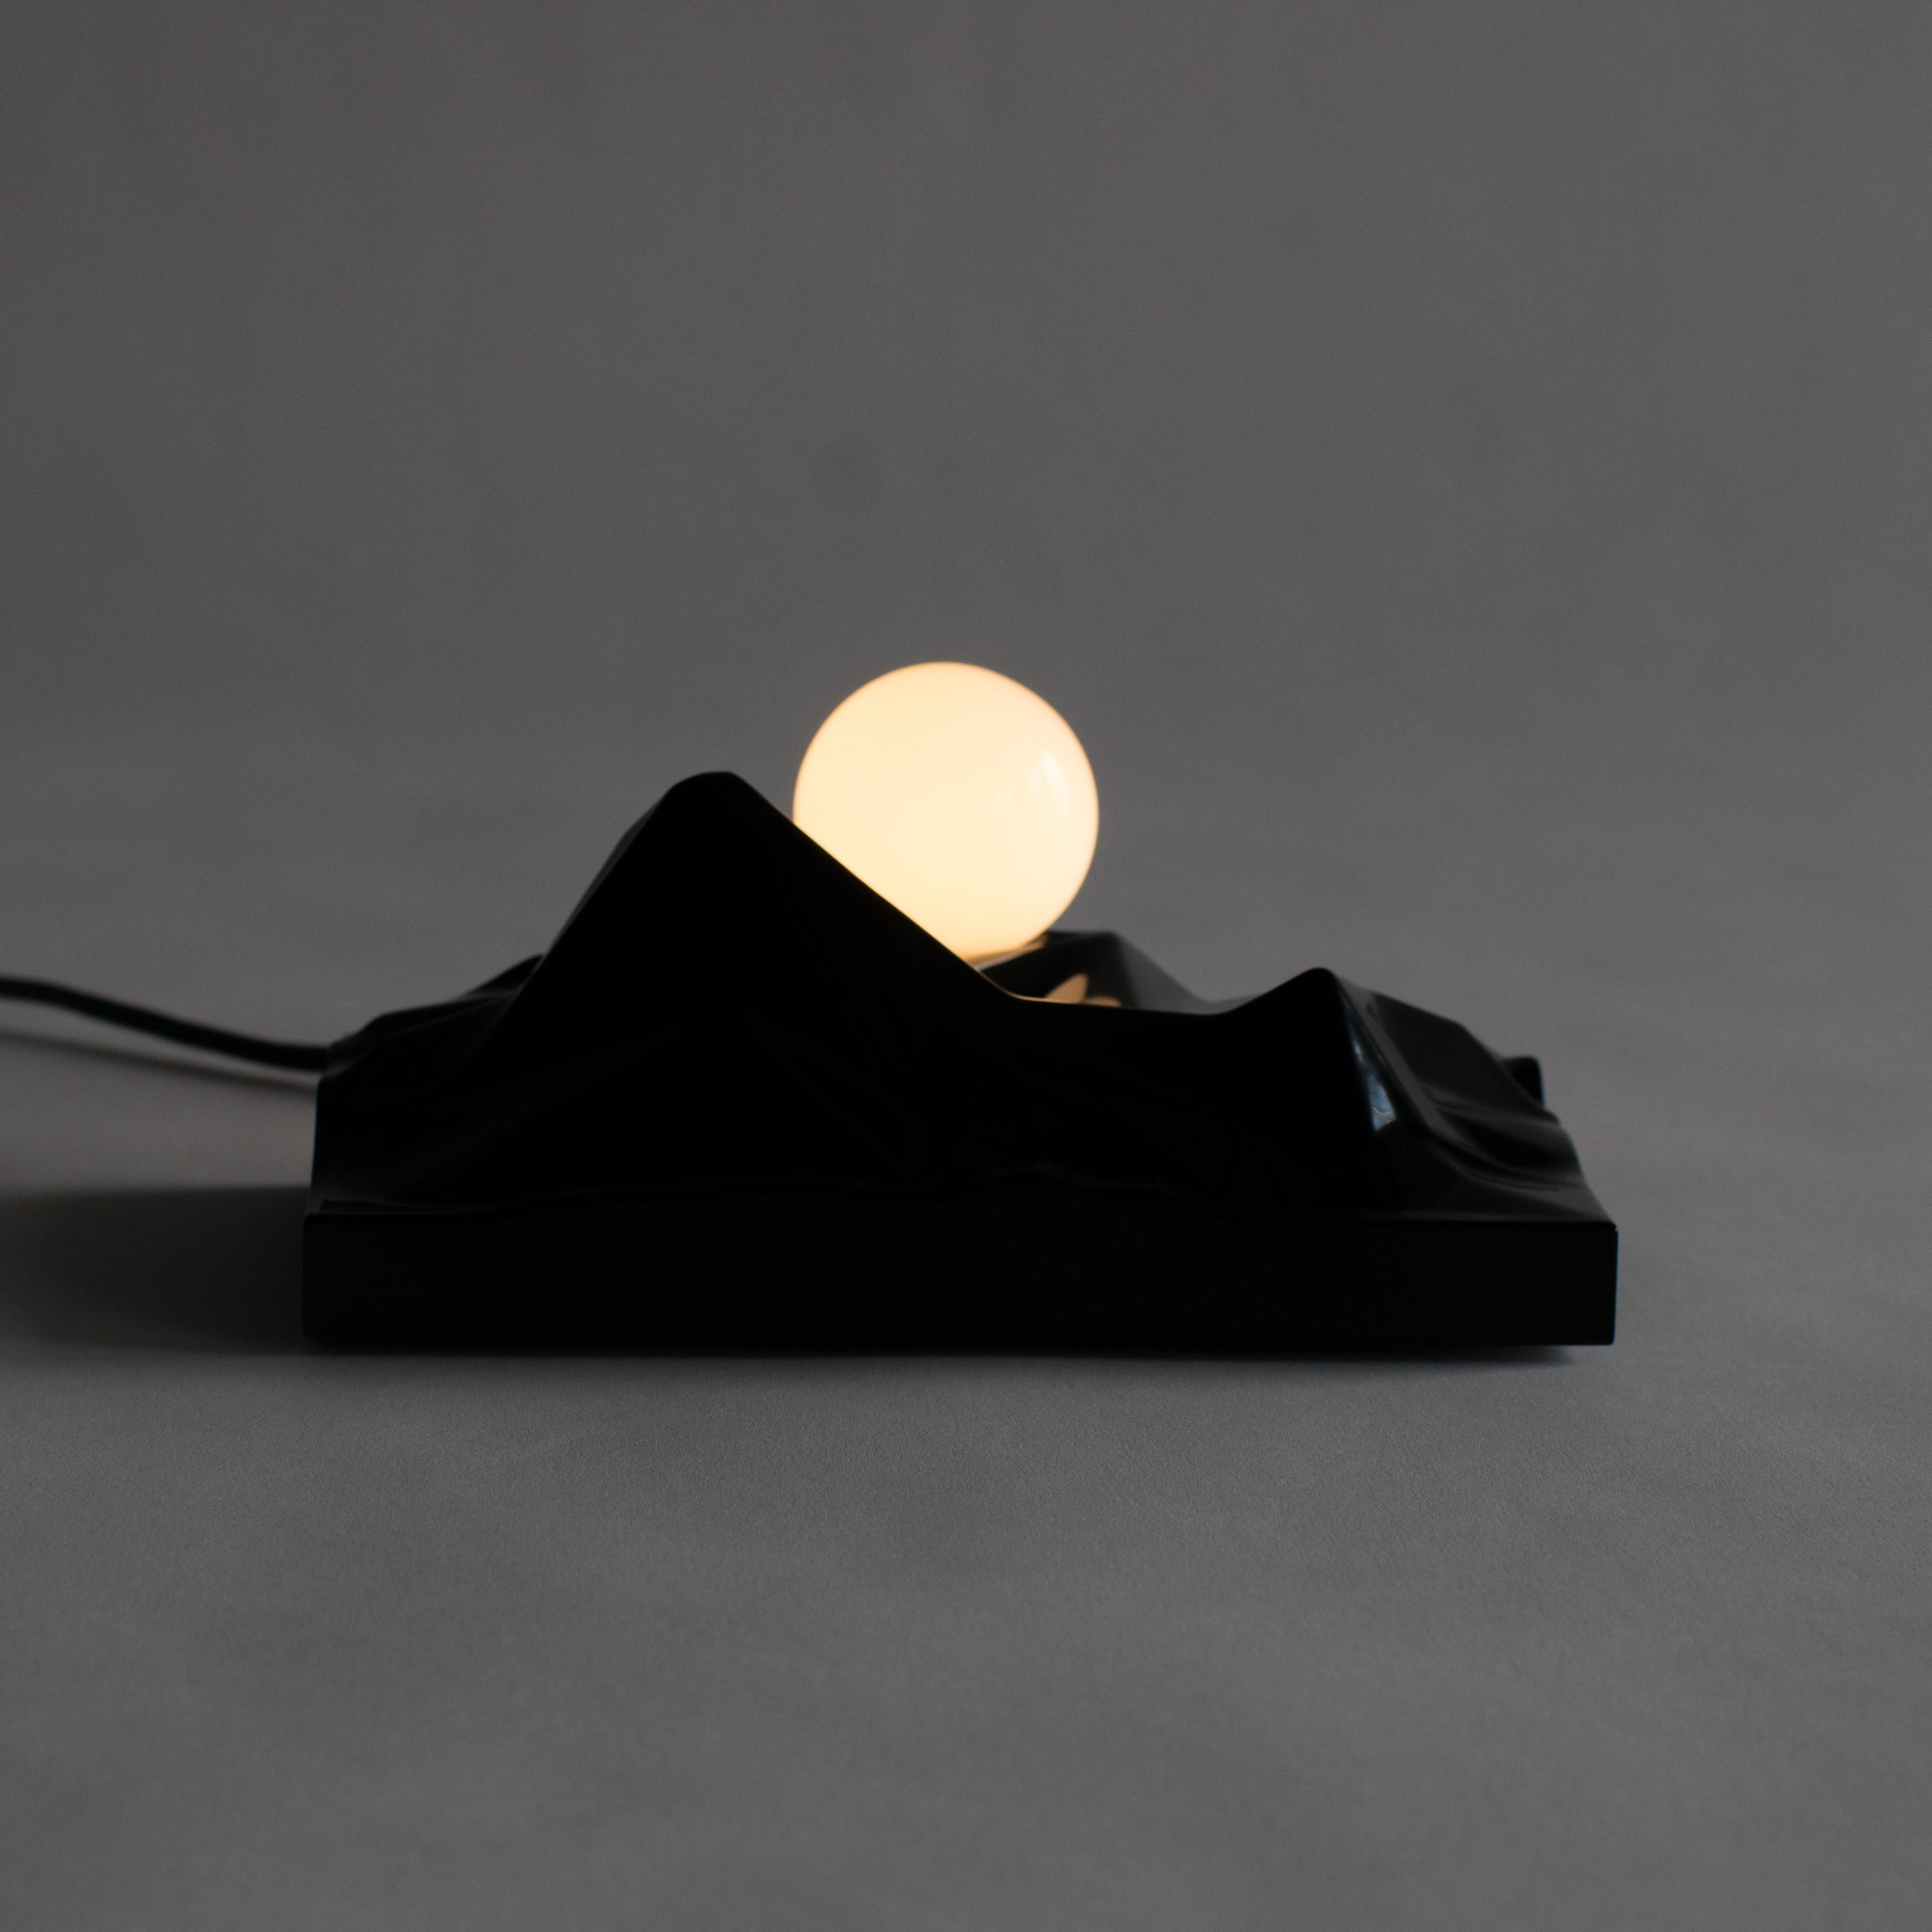 Sunrising Lamp Satoshi Itasaka Urushi Object Contemporary Zen Japanese 2